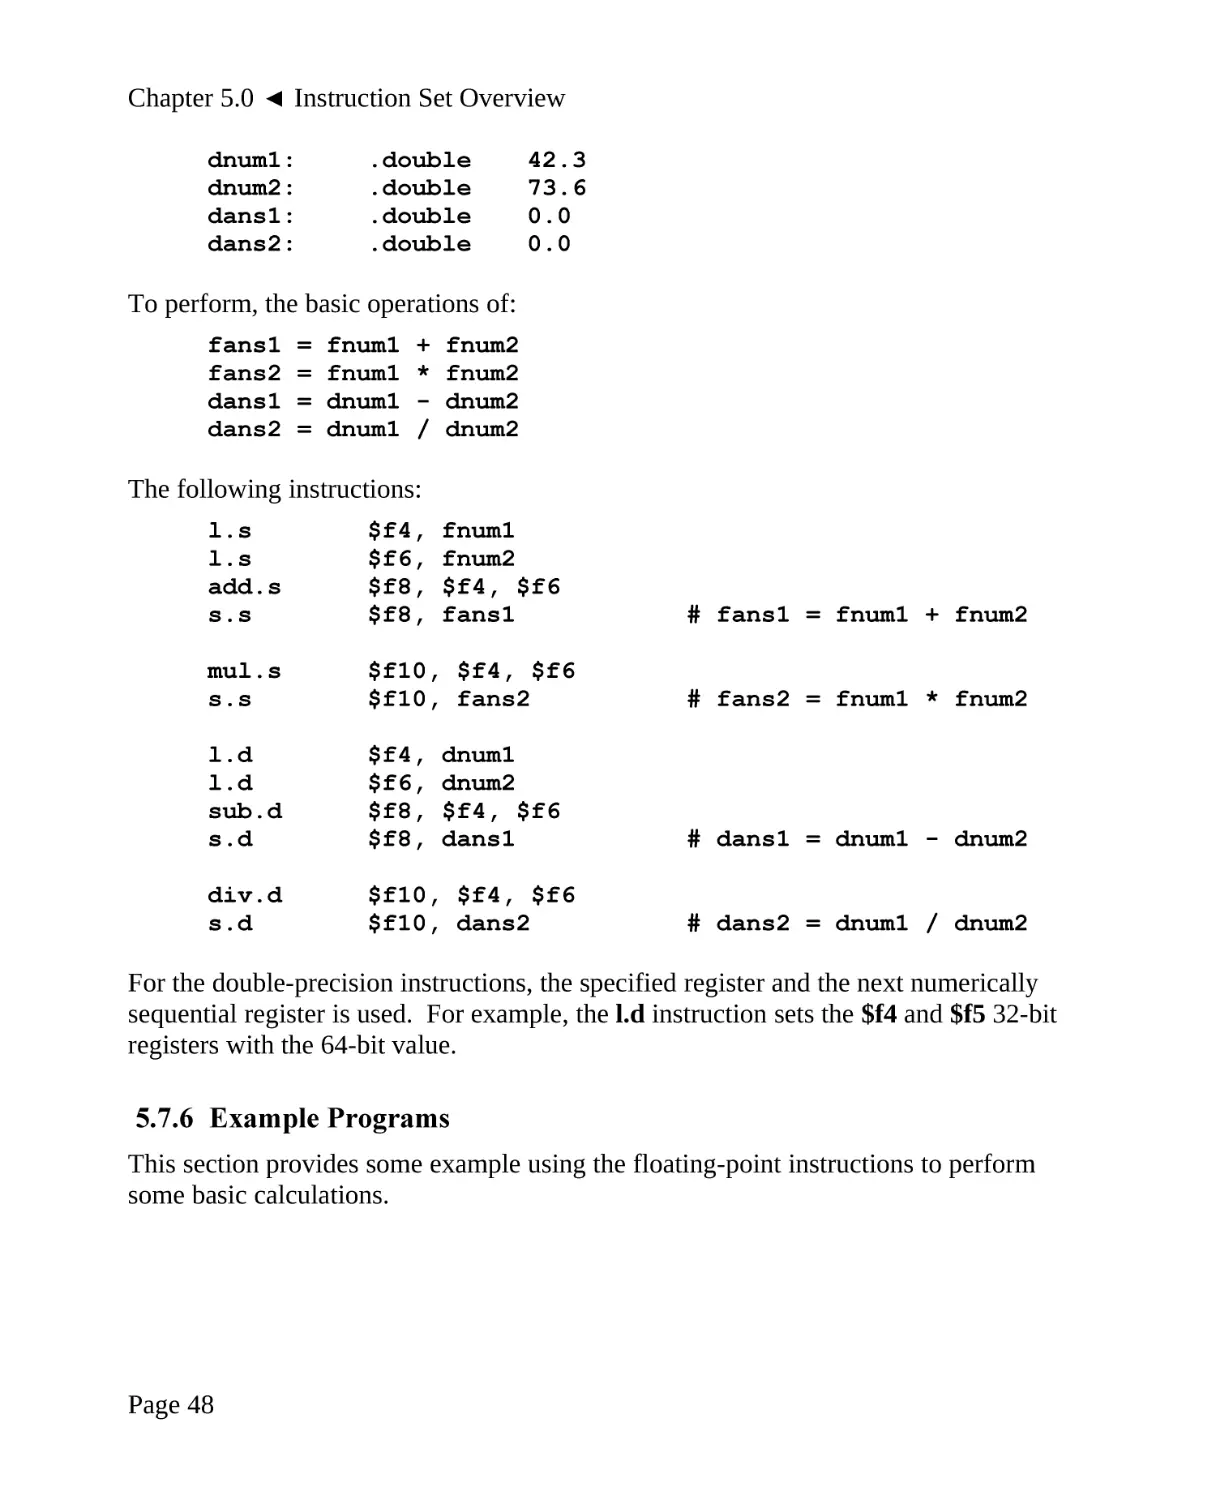 5.7.6 Example Programs